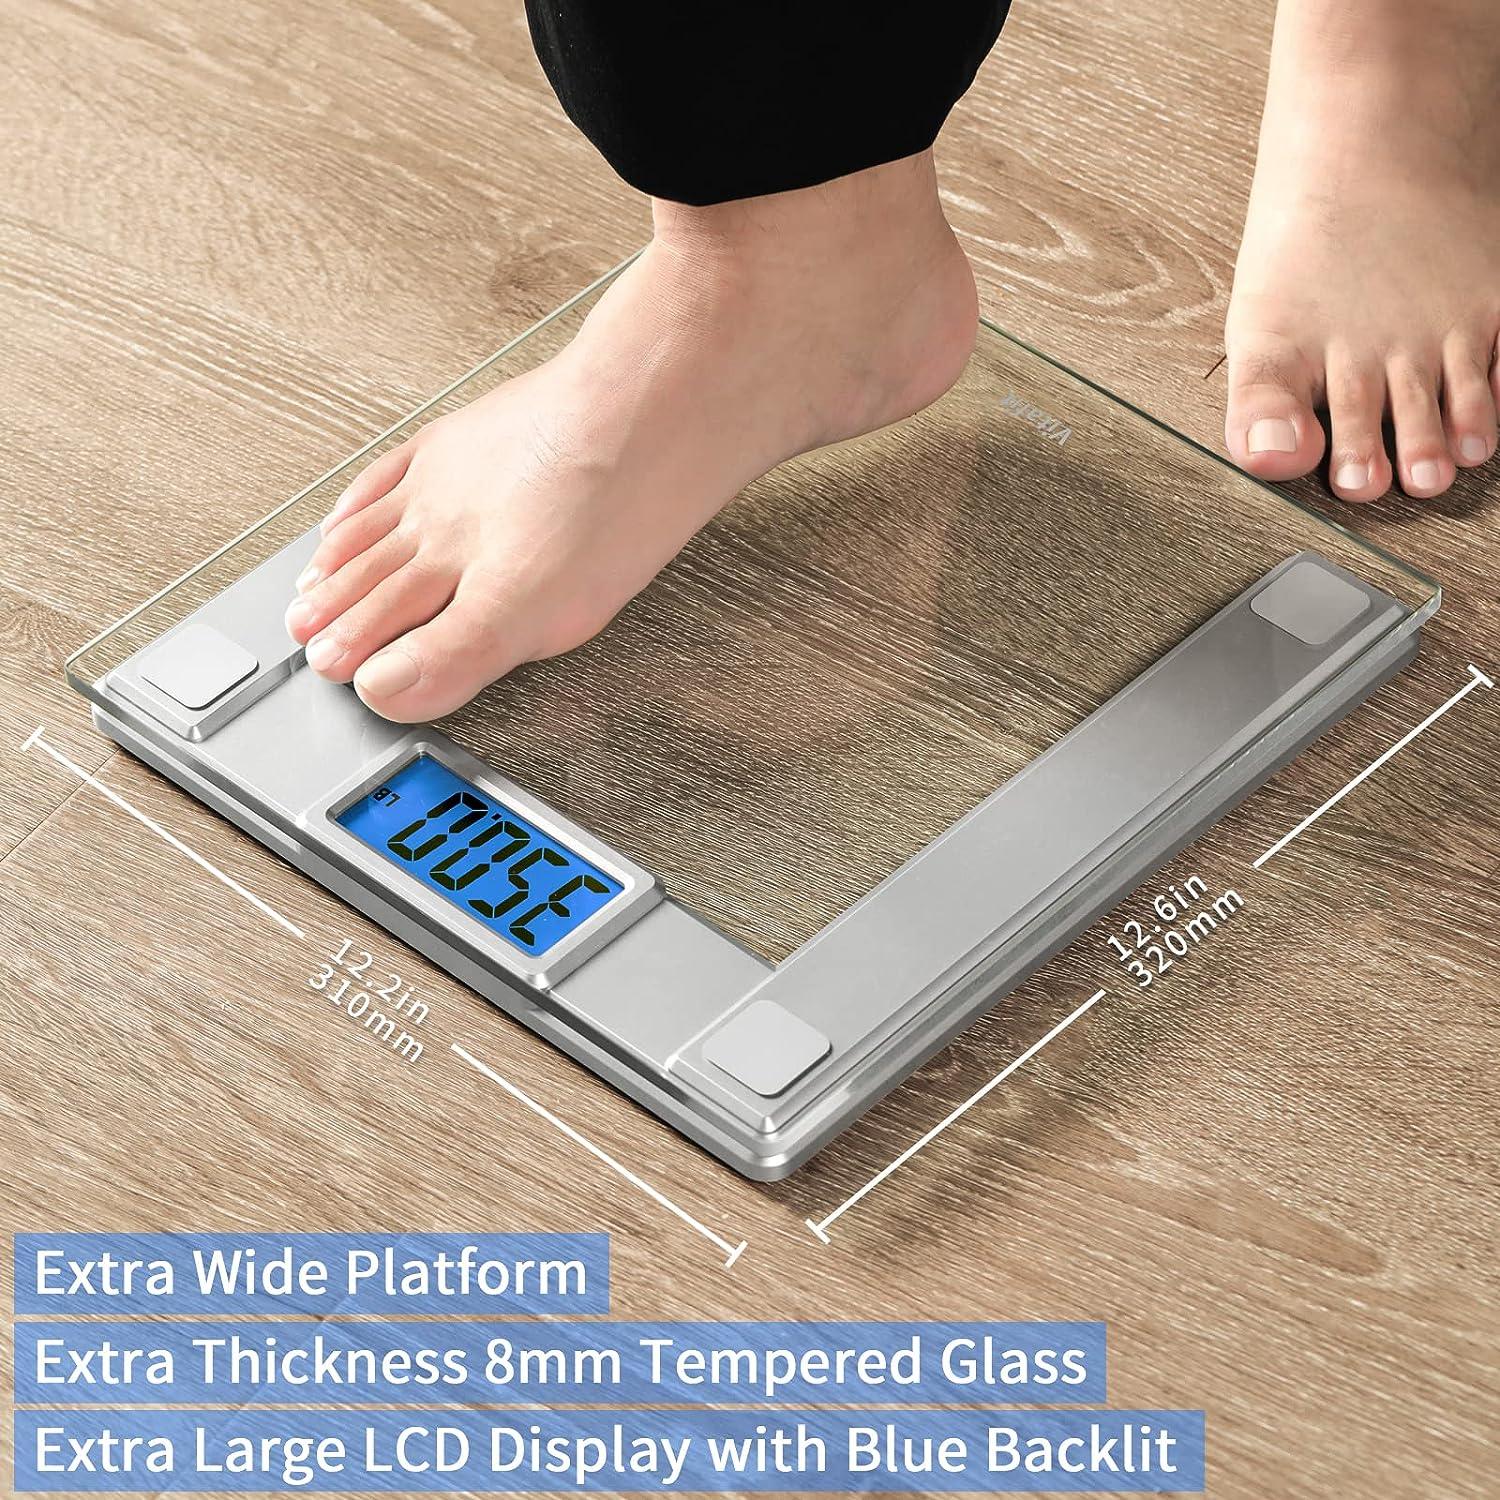 Báscula de baño digital inteligente de peso corporal de 550 libras de capacidad - VIRTUAL MUEBLES